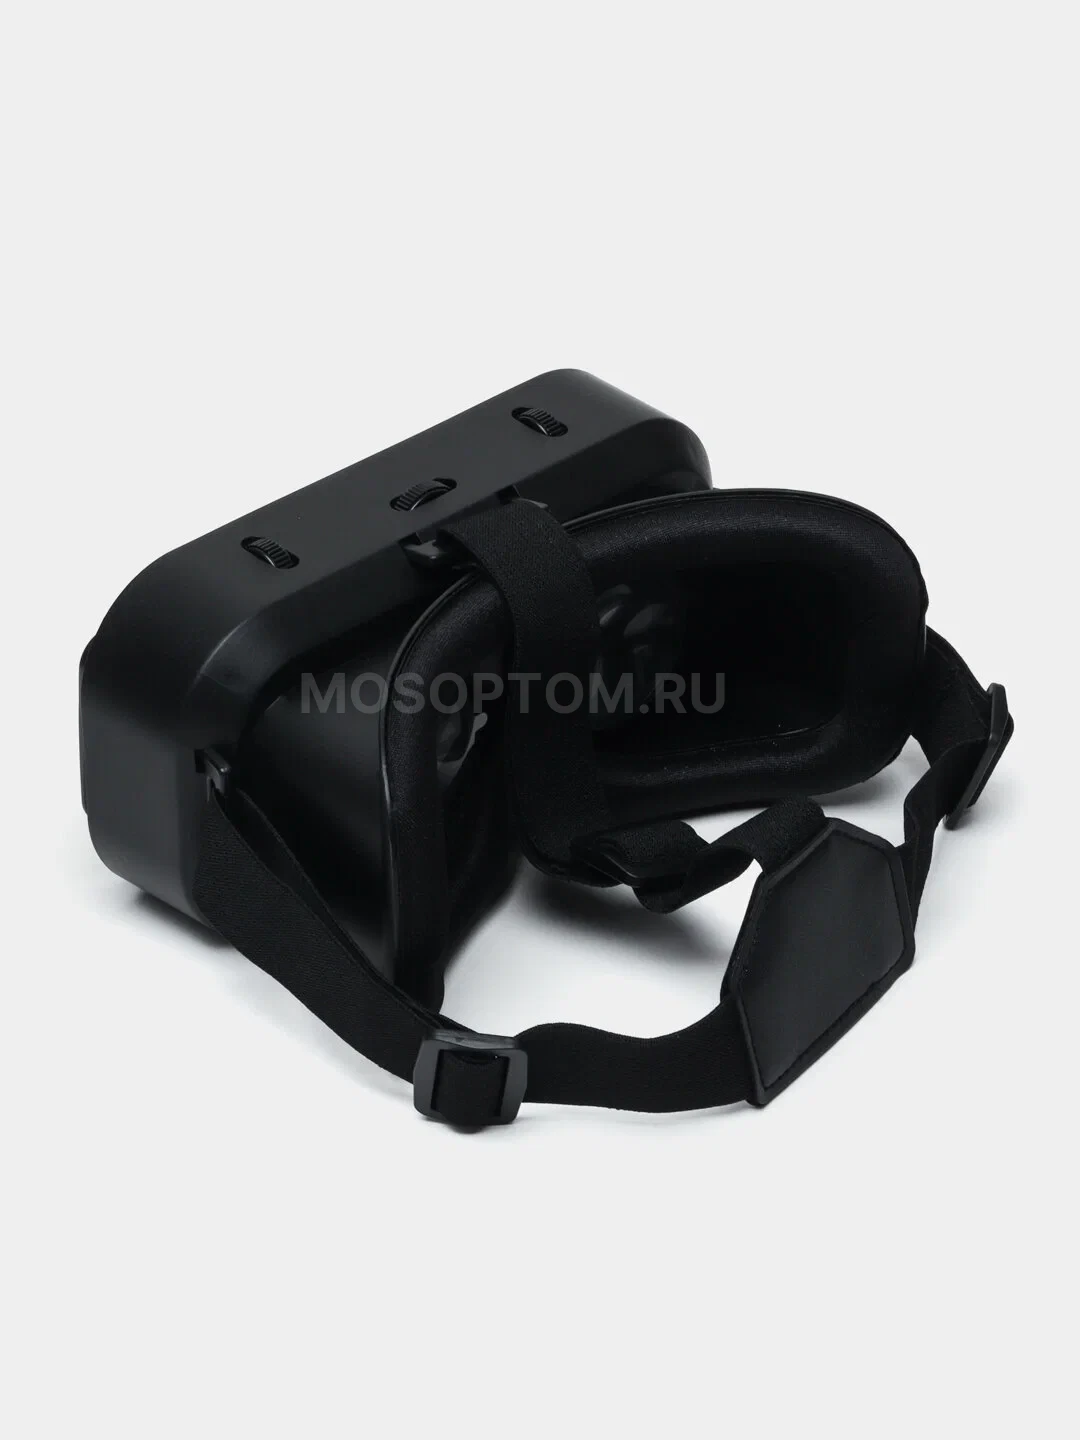 Очки виртуальной реальности VR Shinecon с контроллером SC-G13 оптом - Фото №5